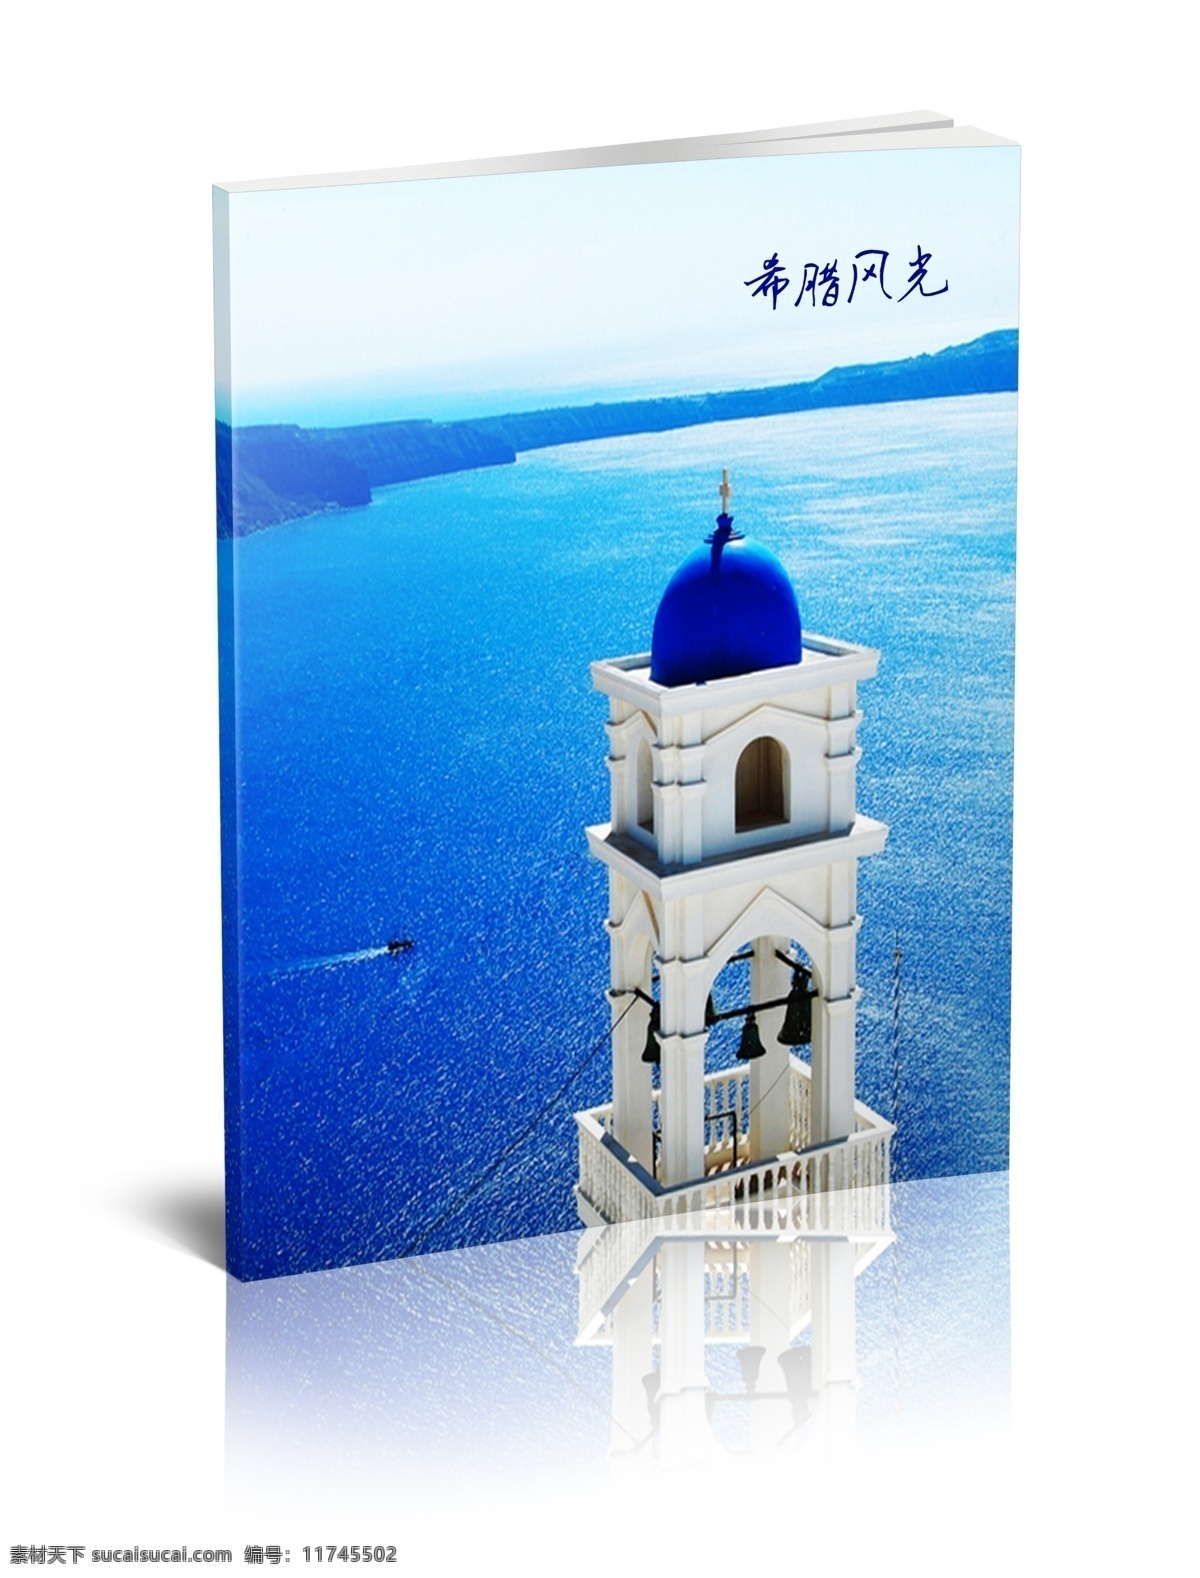 希臘風光 藍色 希臘建築 愛琴海風光 大海 白色